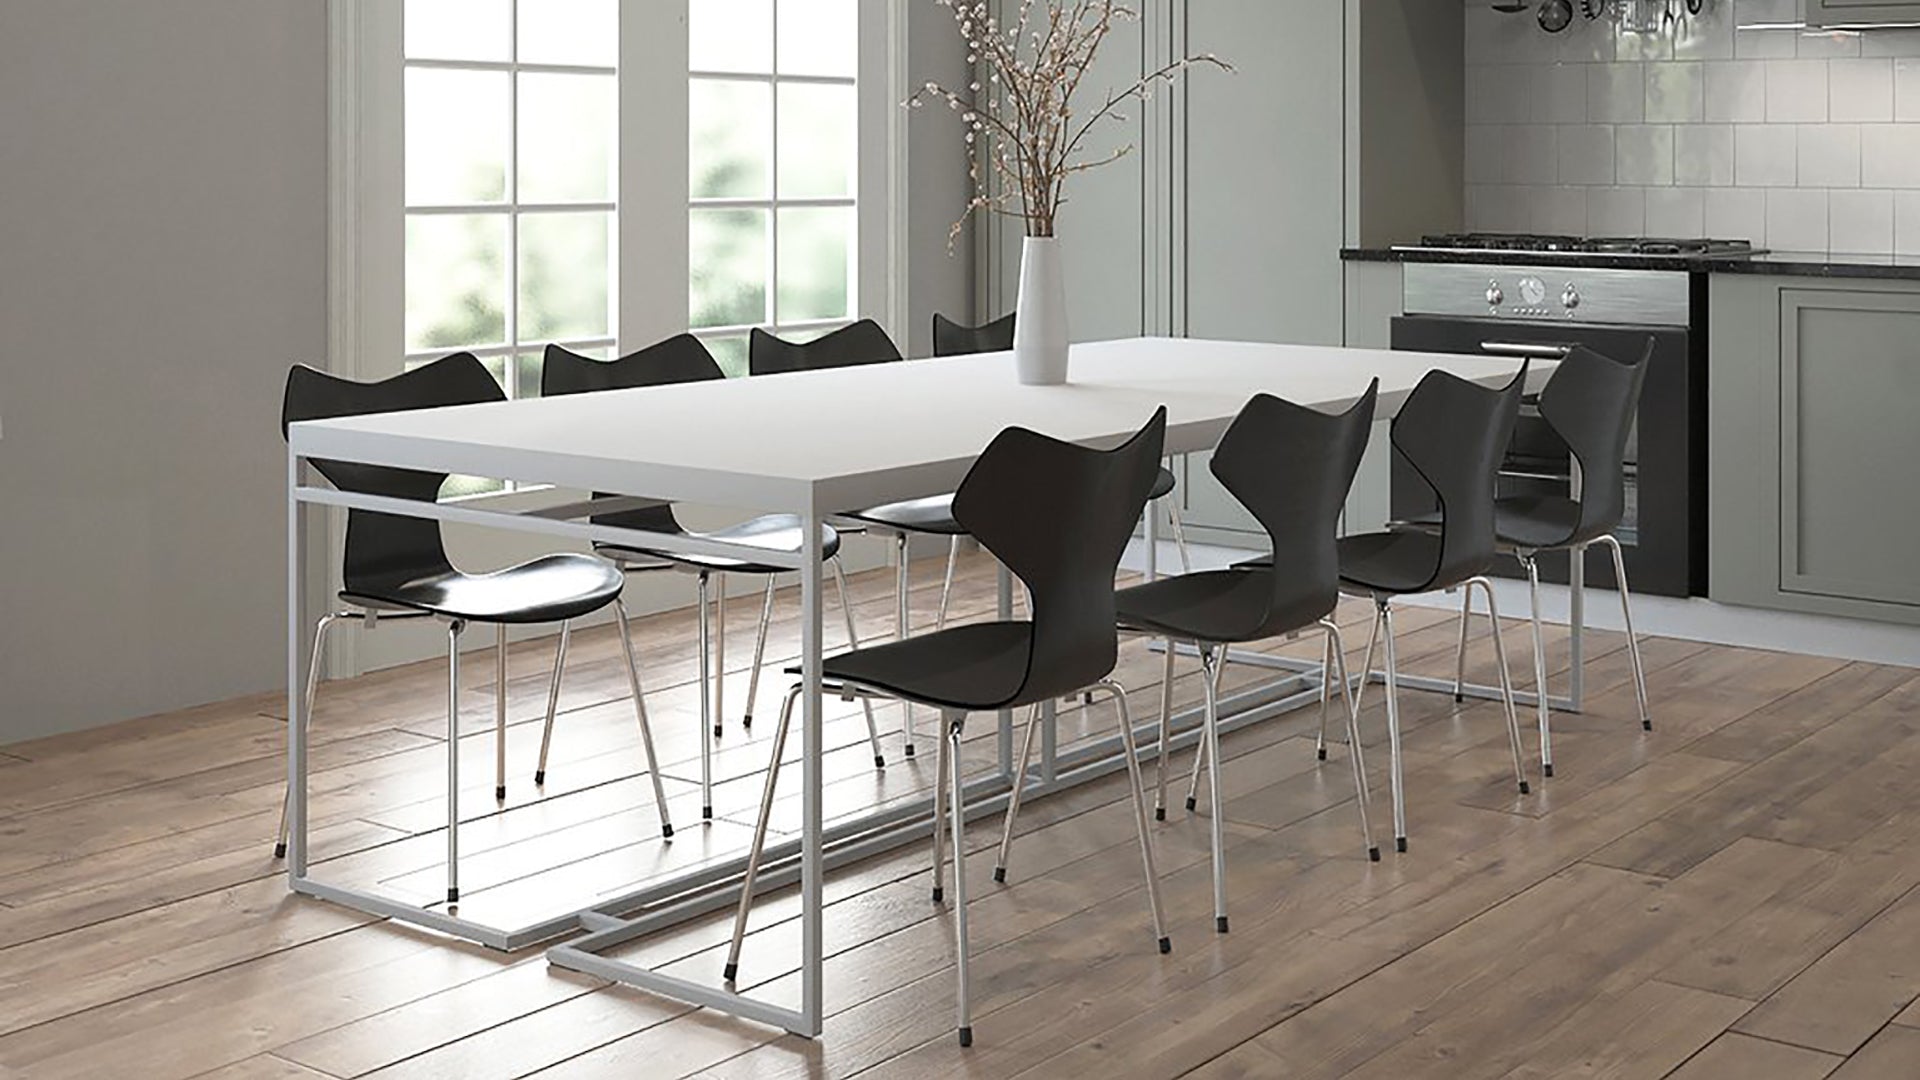 Minimalist dining tables | Minimalistische Esstische| Minimalistische eettafels| Mesas de comedor minimalistas|Design eettafels|